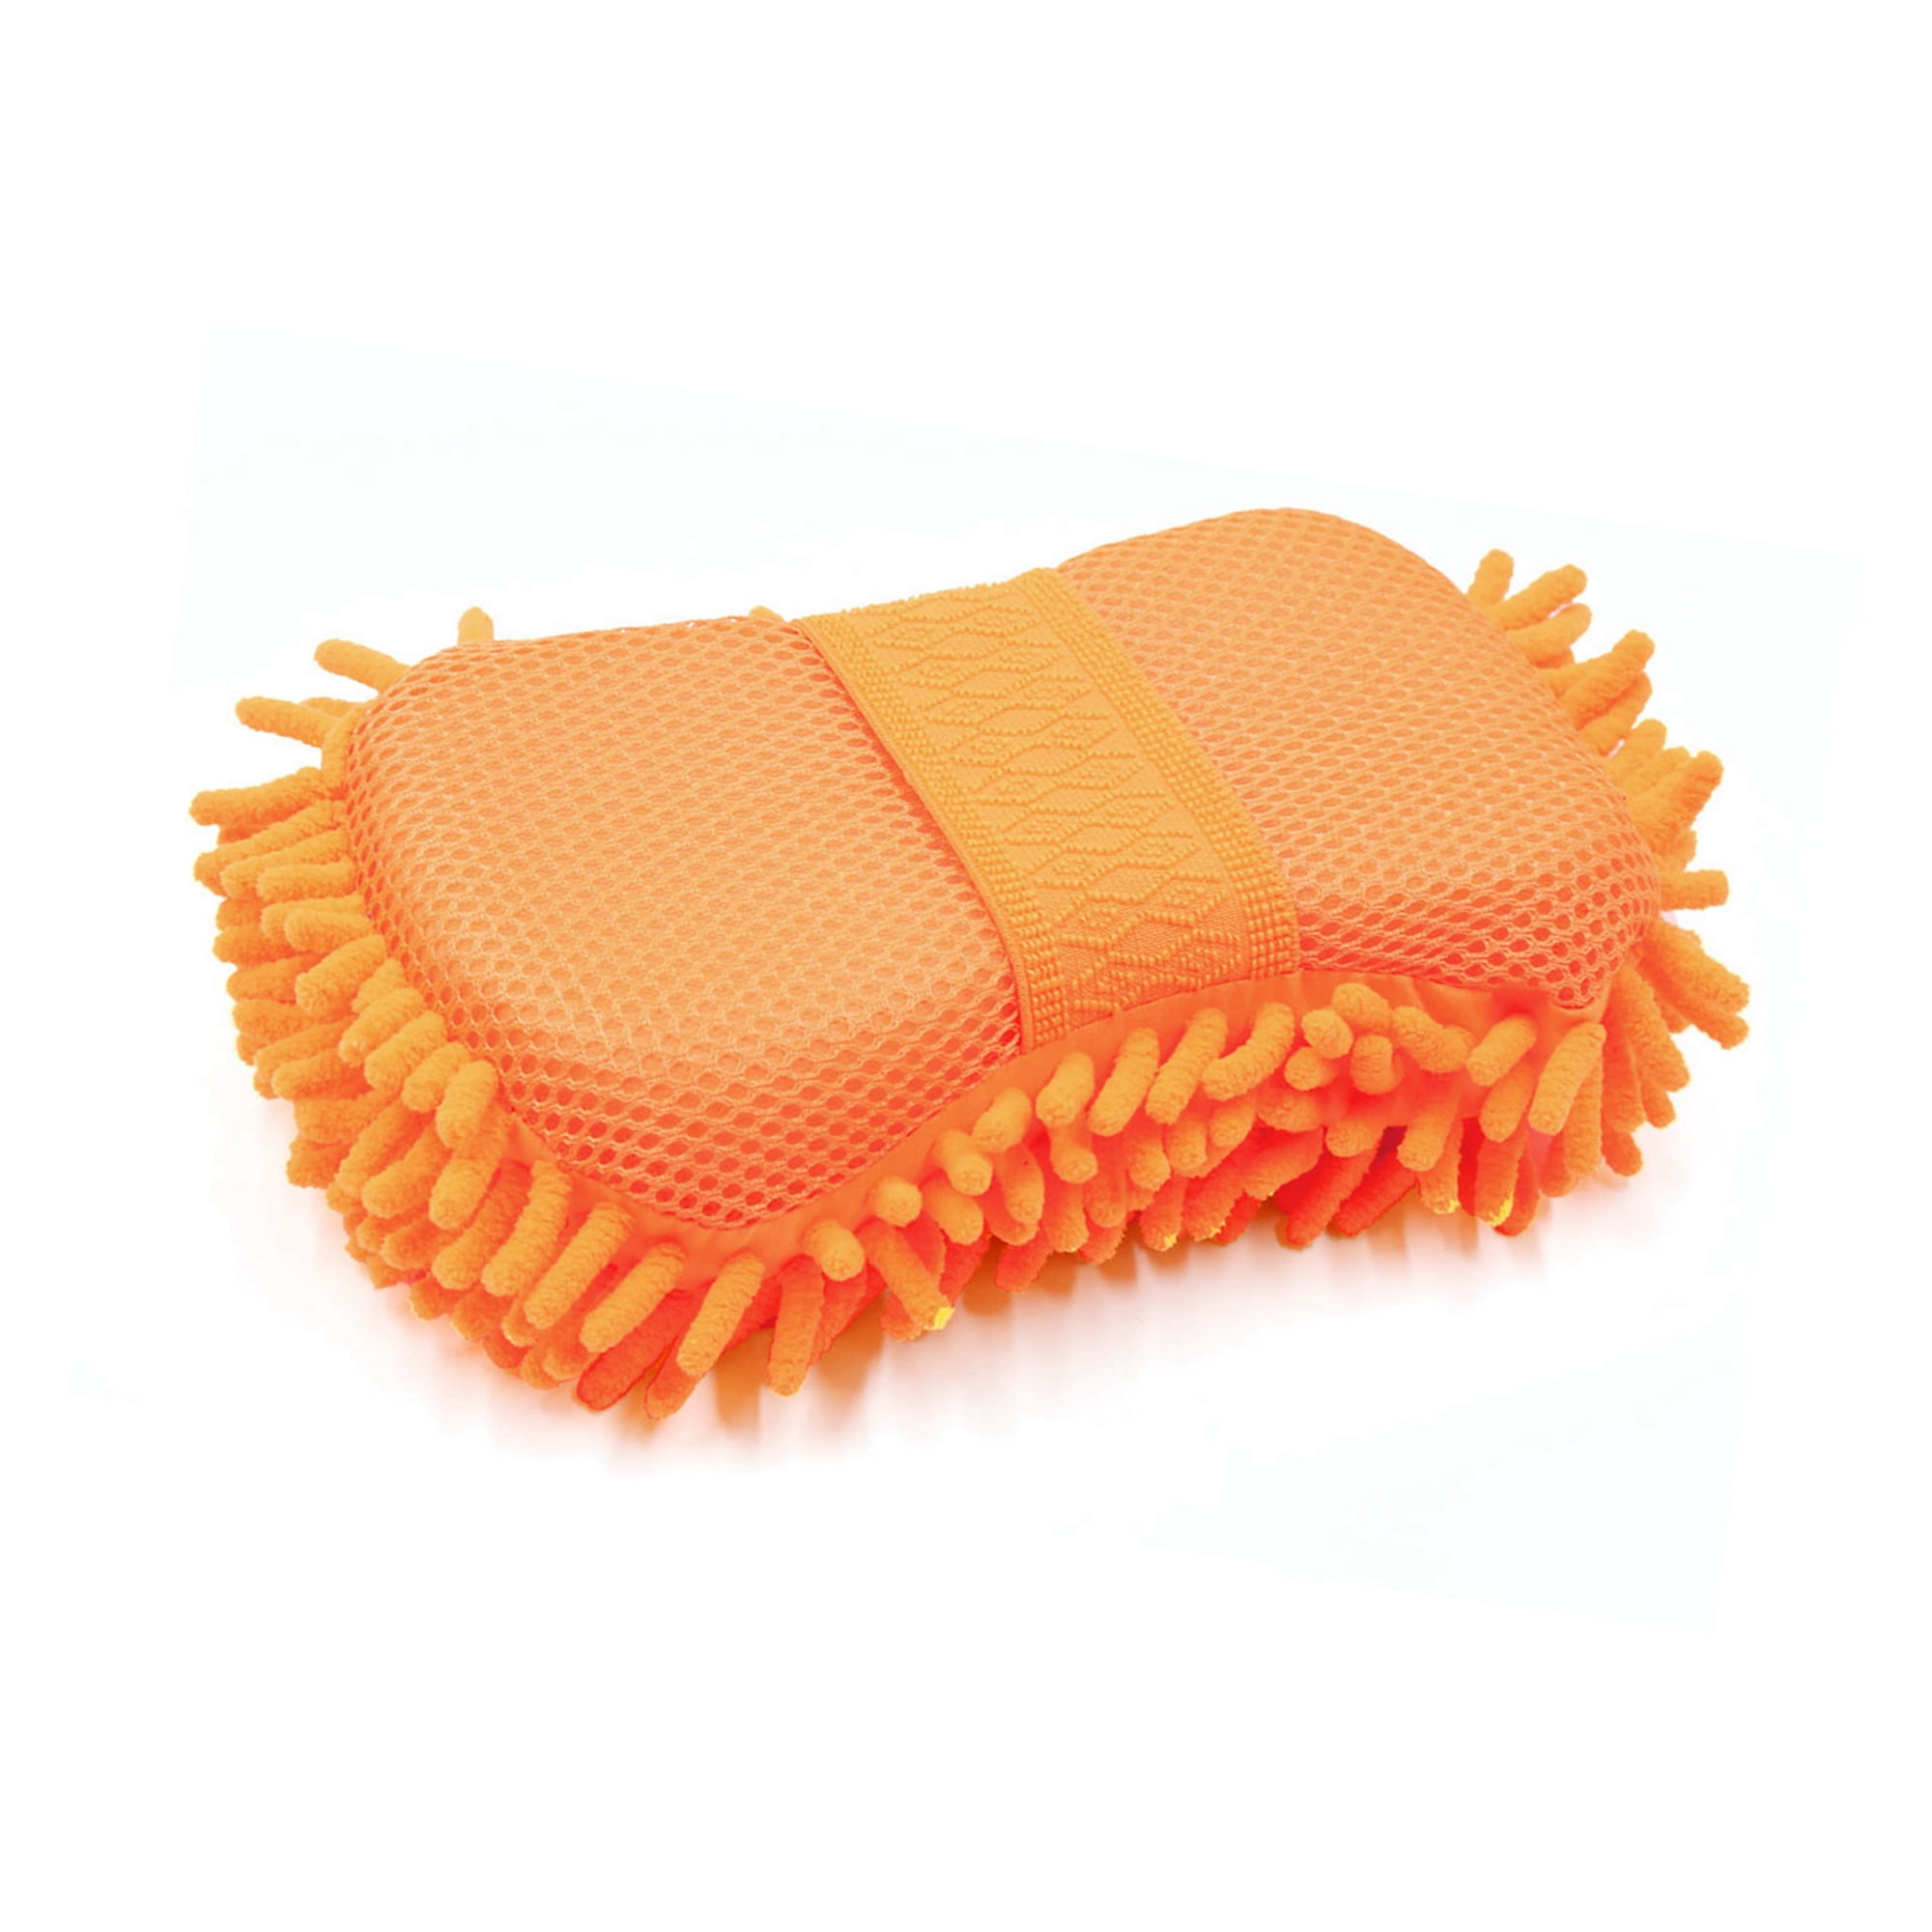 Car Wash Sponge Length 9.45 x 5.1 x 2.76 in., Chenille microfiber